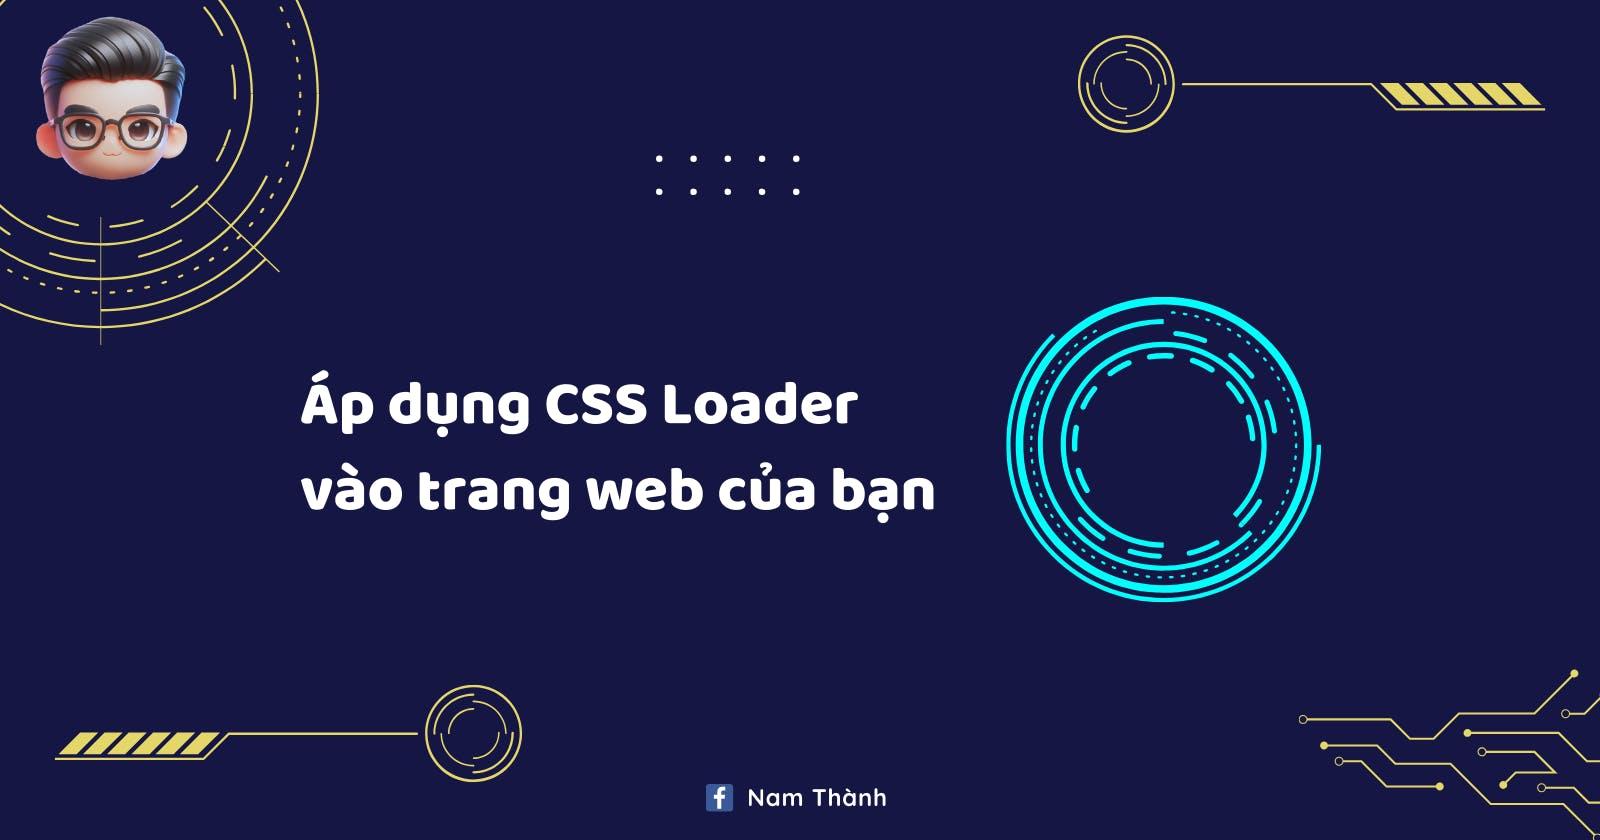 CSS Loader là gì? Áp dụng CSS Loader vào website của bạn